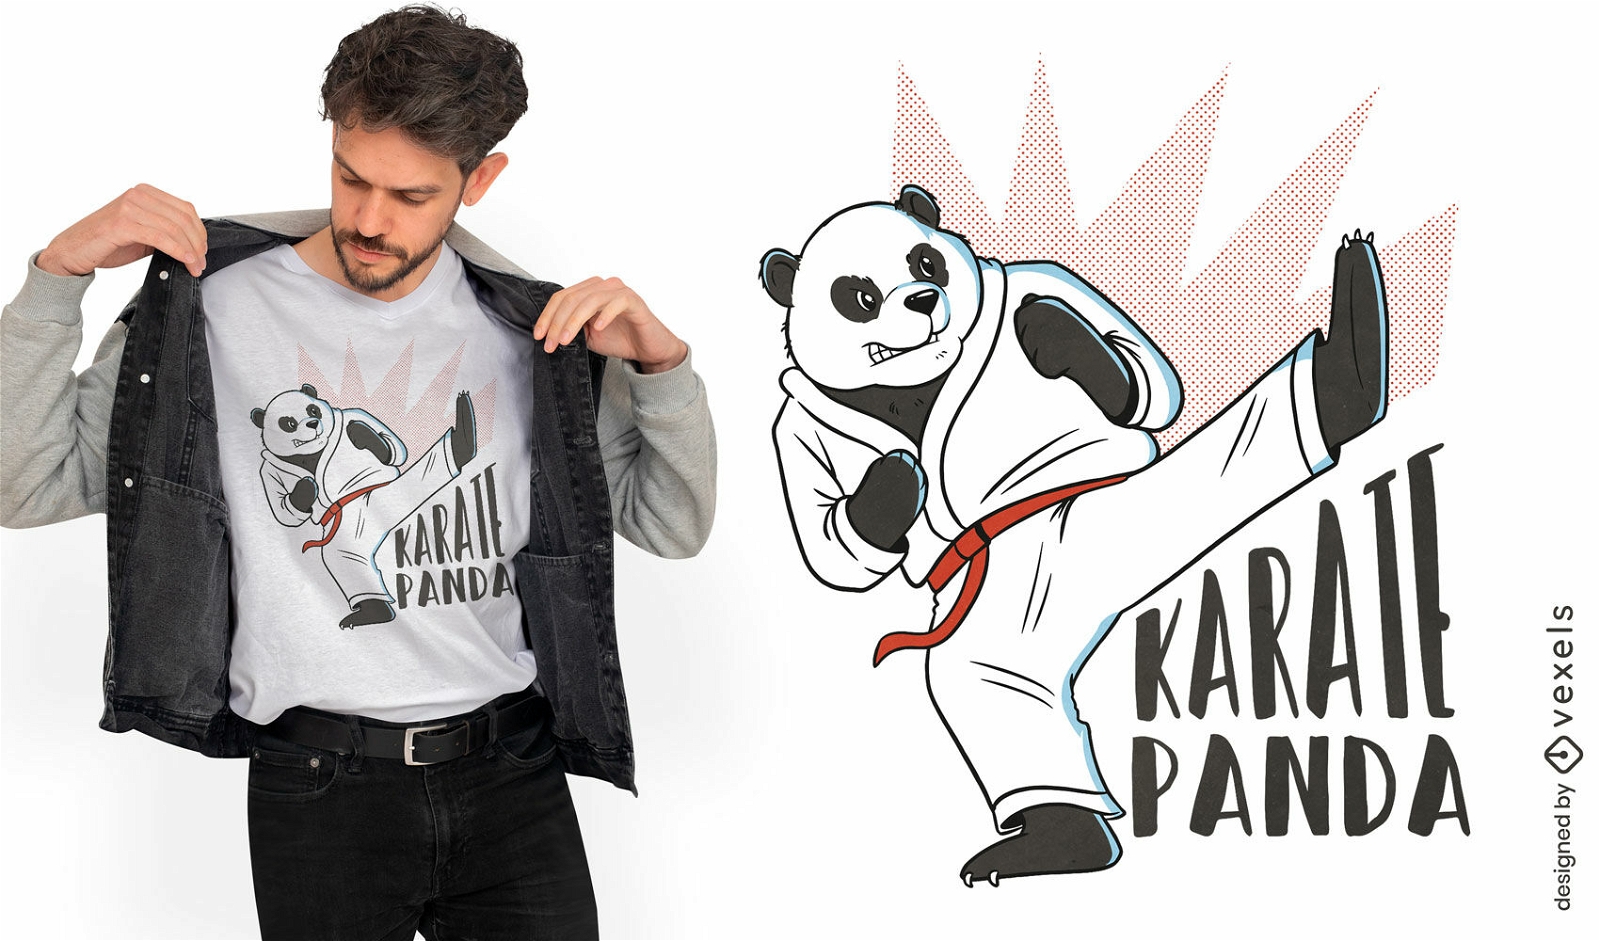 Karate panda cartoon t-shirt design